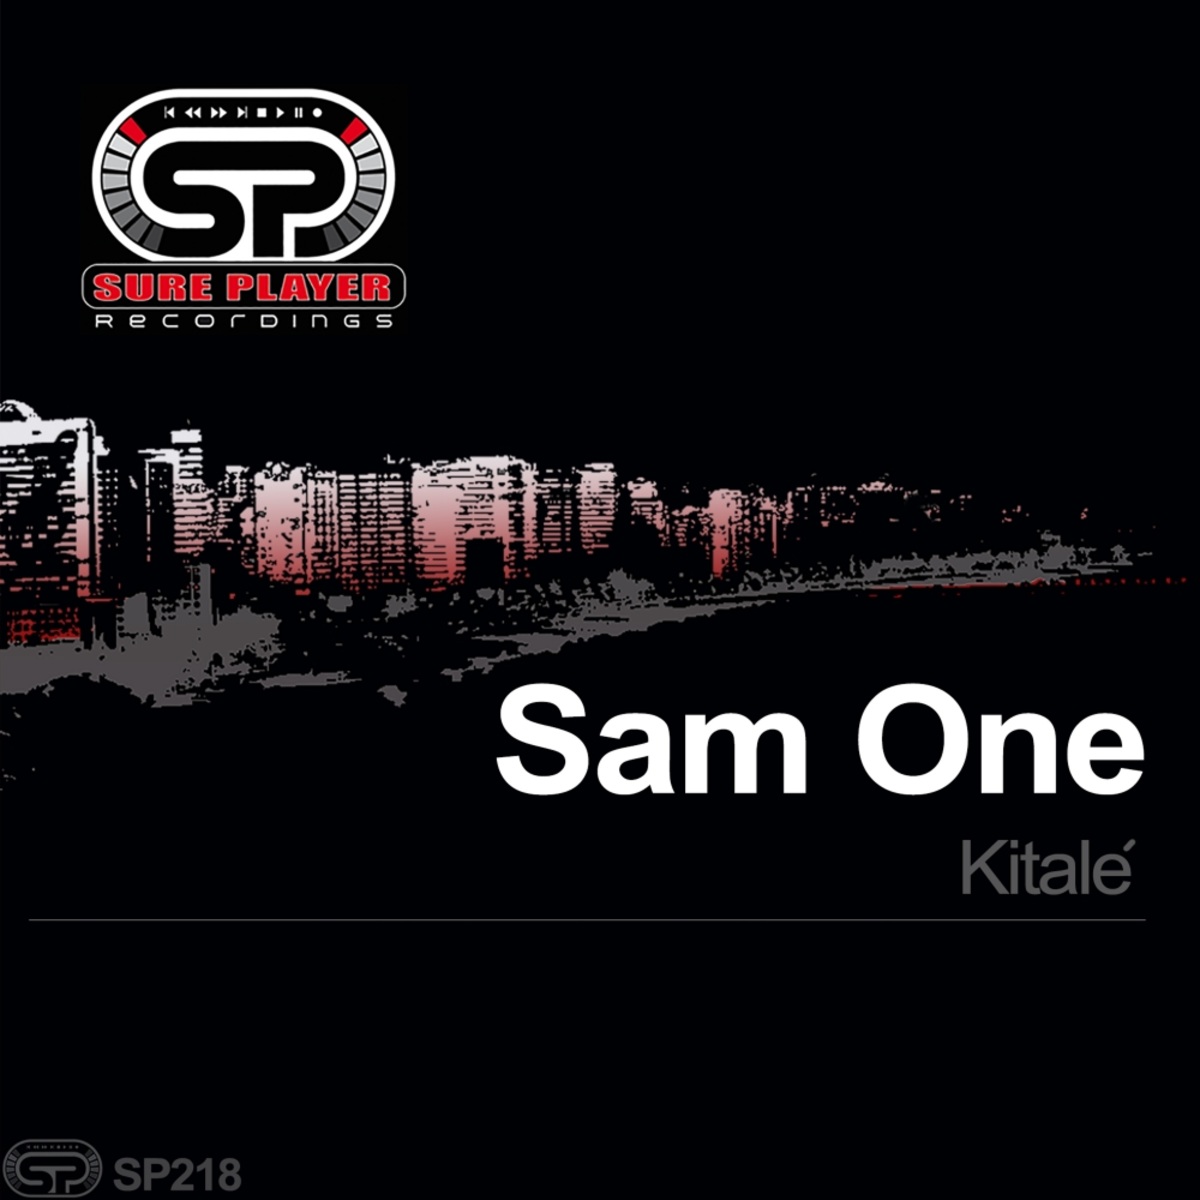 Sam one - Kitale / SP Recordings